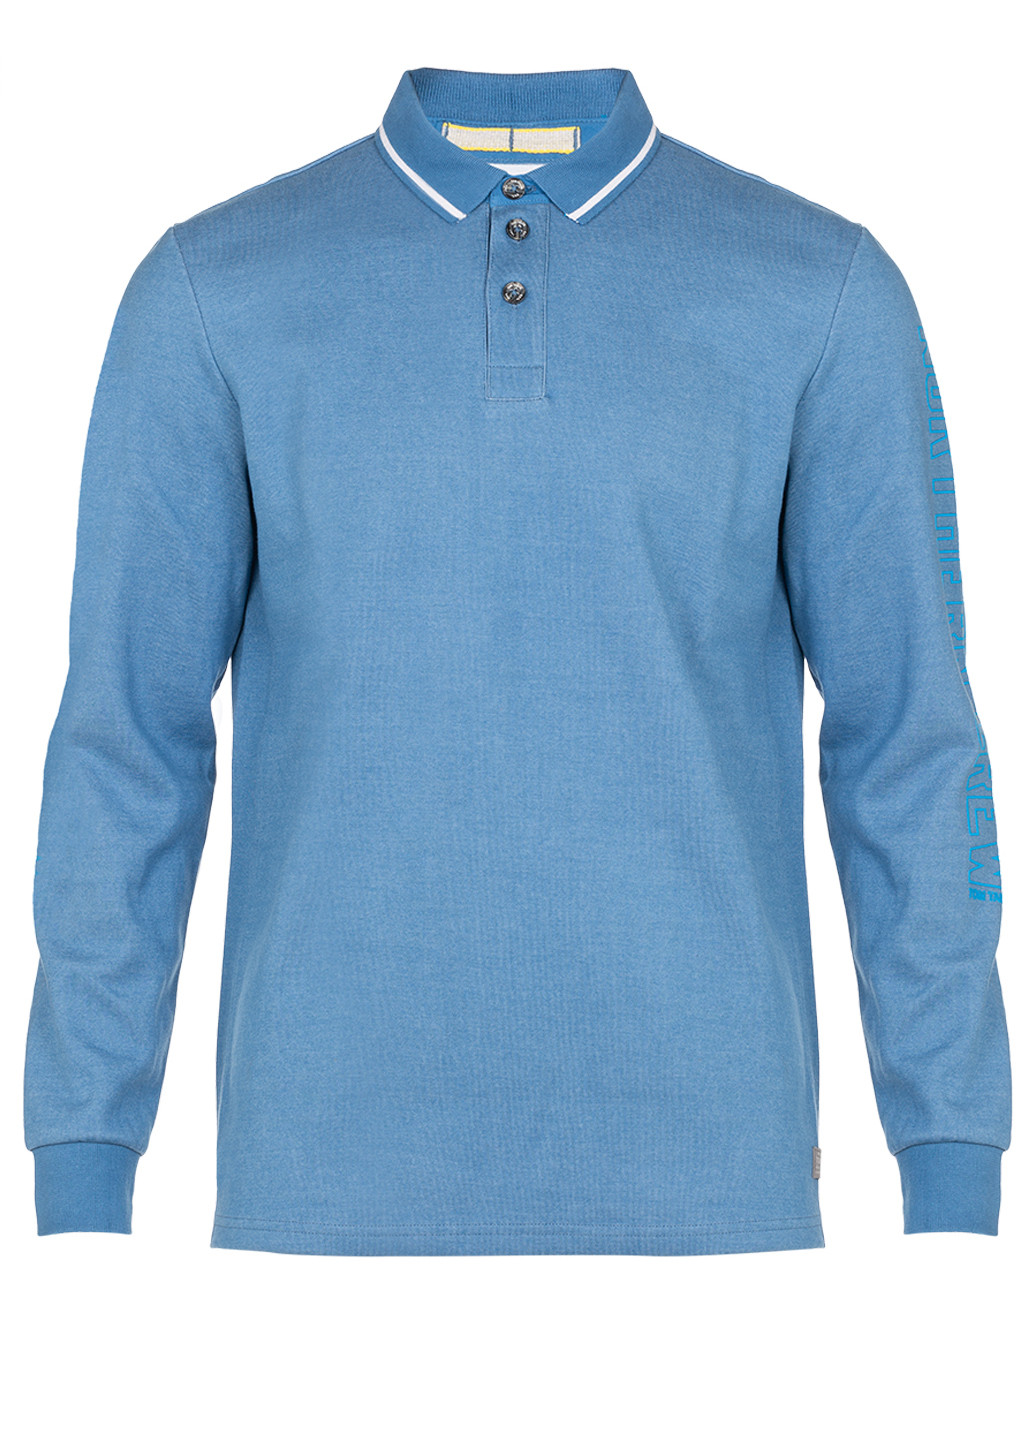 Голубой футболка-мужское поло длинный рукав для мужчин Tom Tailor однотонная